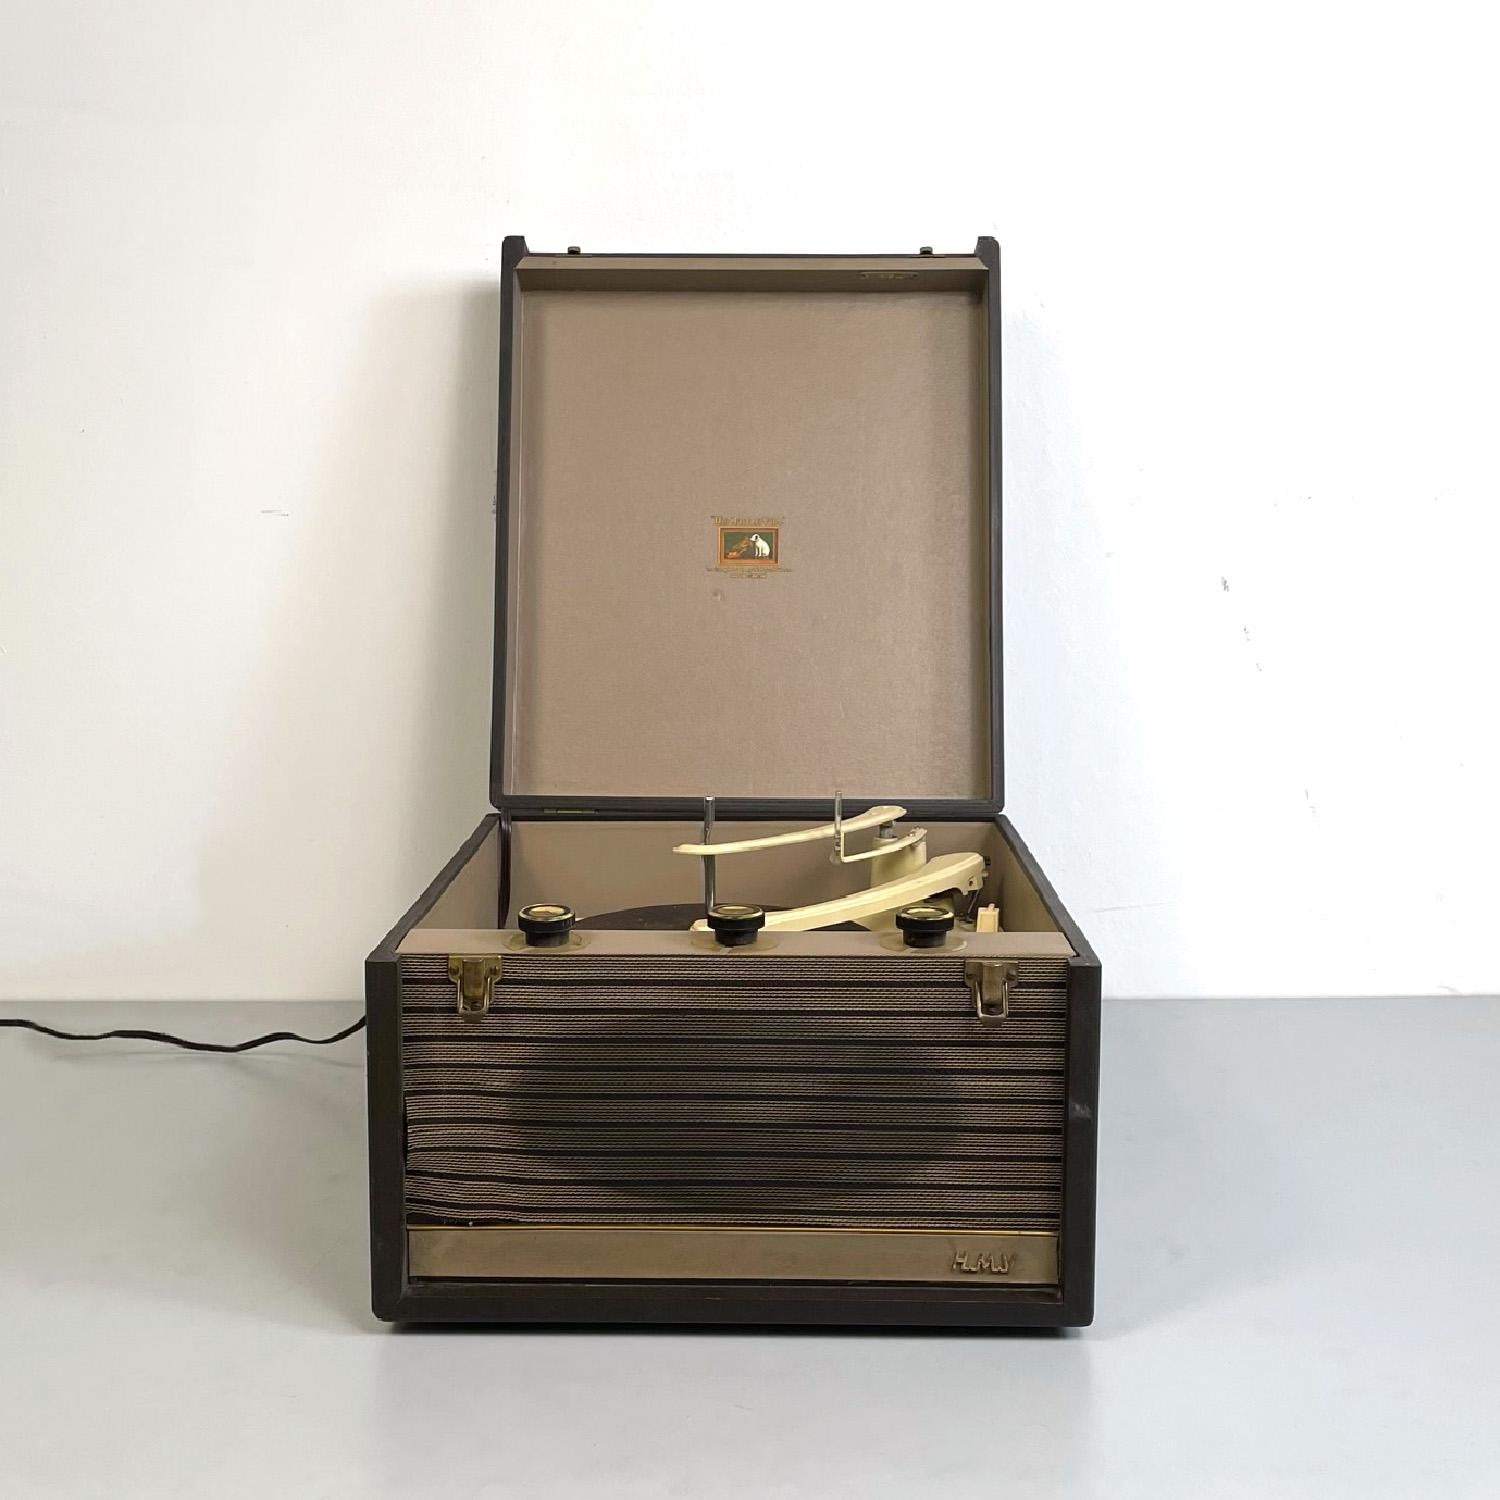 Englisches modernes Vinyl-Plattenspieleretui aus der Mitte des Jahrhunderts von His Master's Voice, 1950er Jahre
Vinyl-Schallplattenspieler mit rechteckigem Gehäuse. Struktur aus dunkel- und hellbraunem Holz. Der Plattenspieler befindet sich